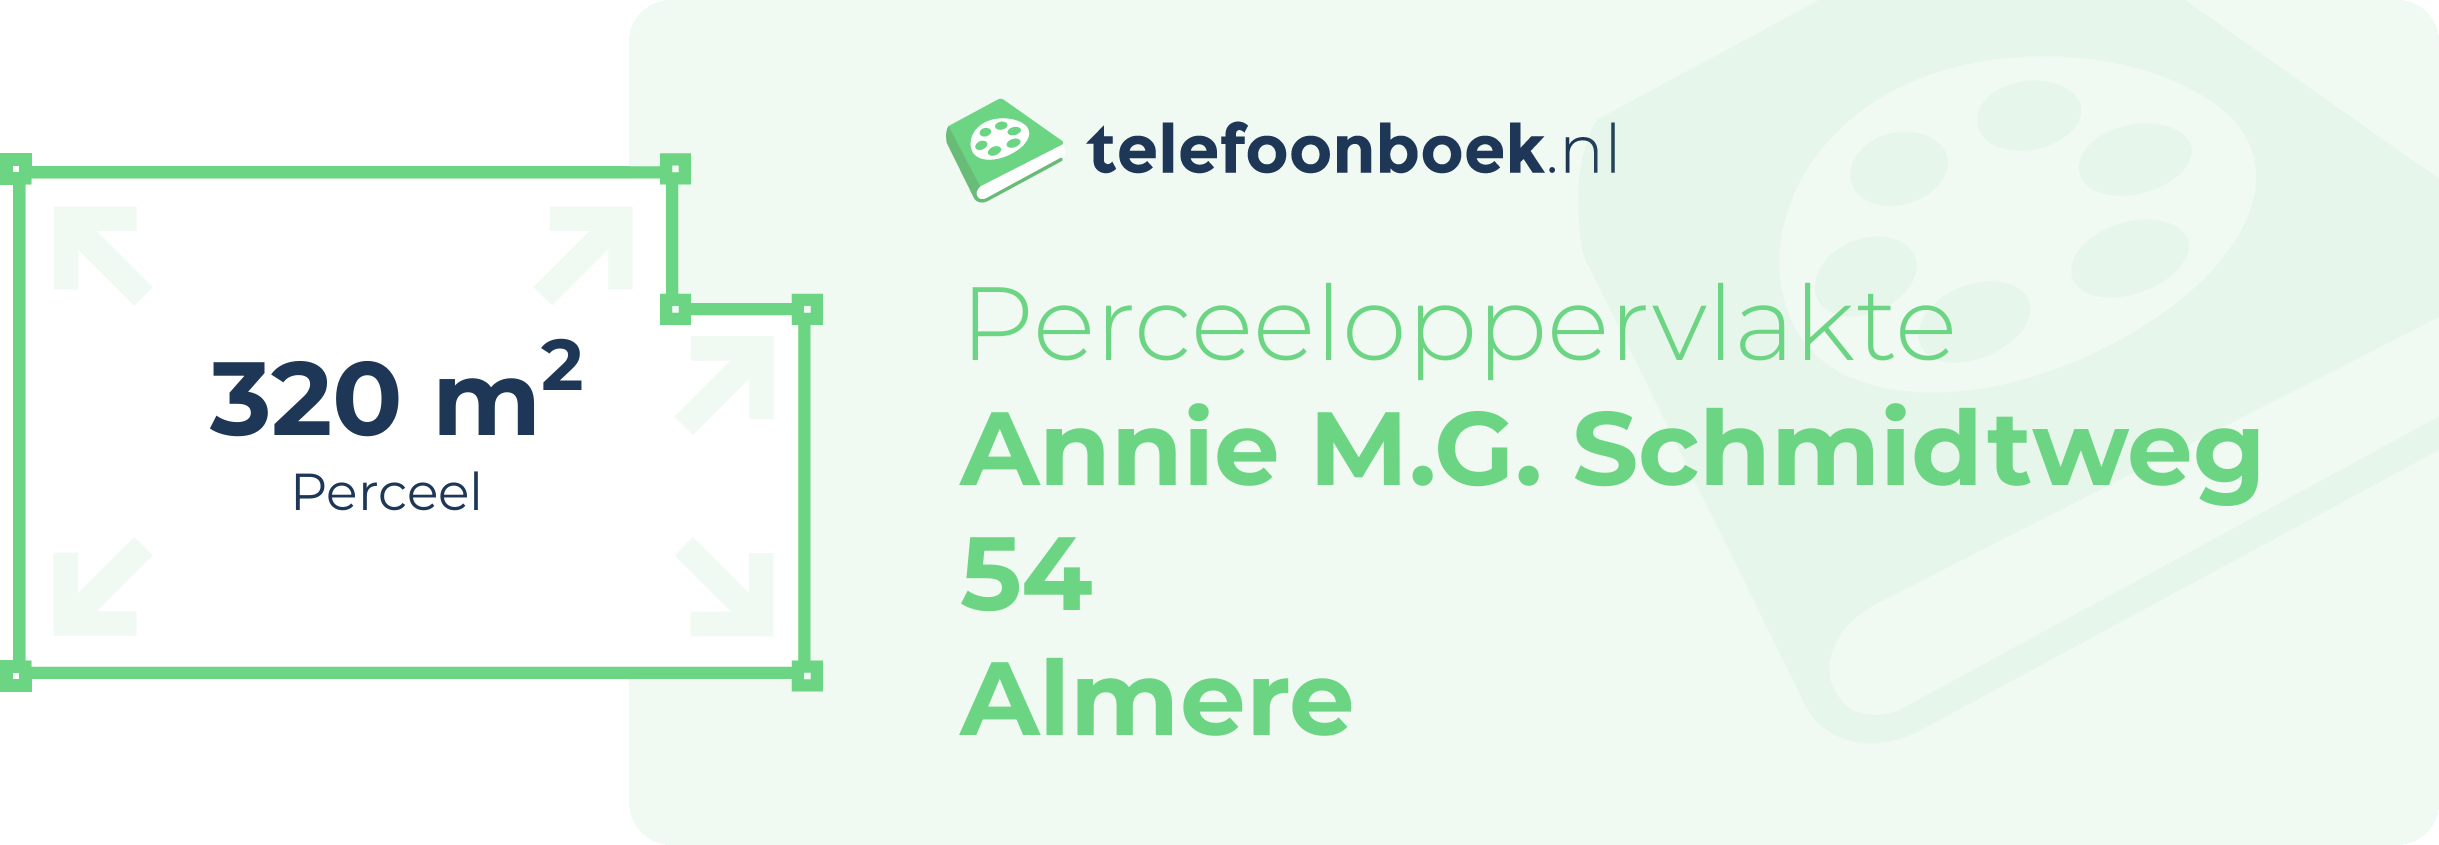 Perceeloppervlakte Annie M.G. Schmidtweg 54 Almere